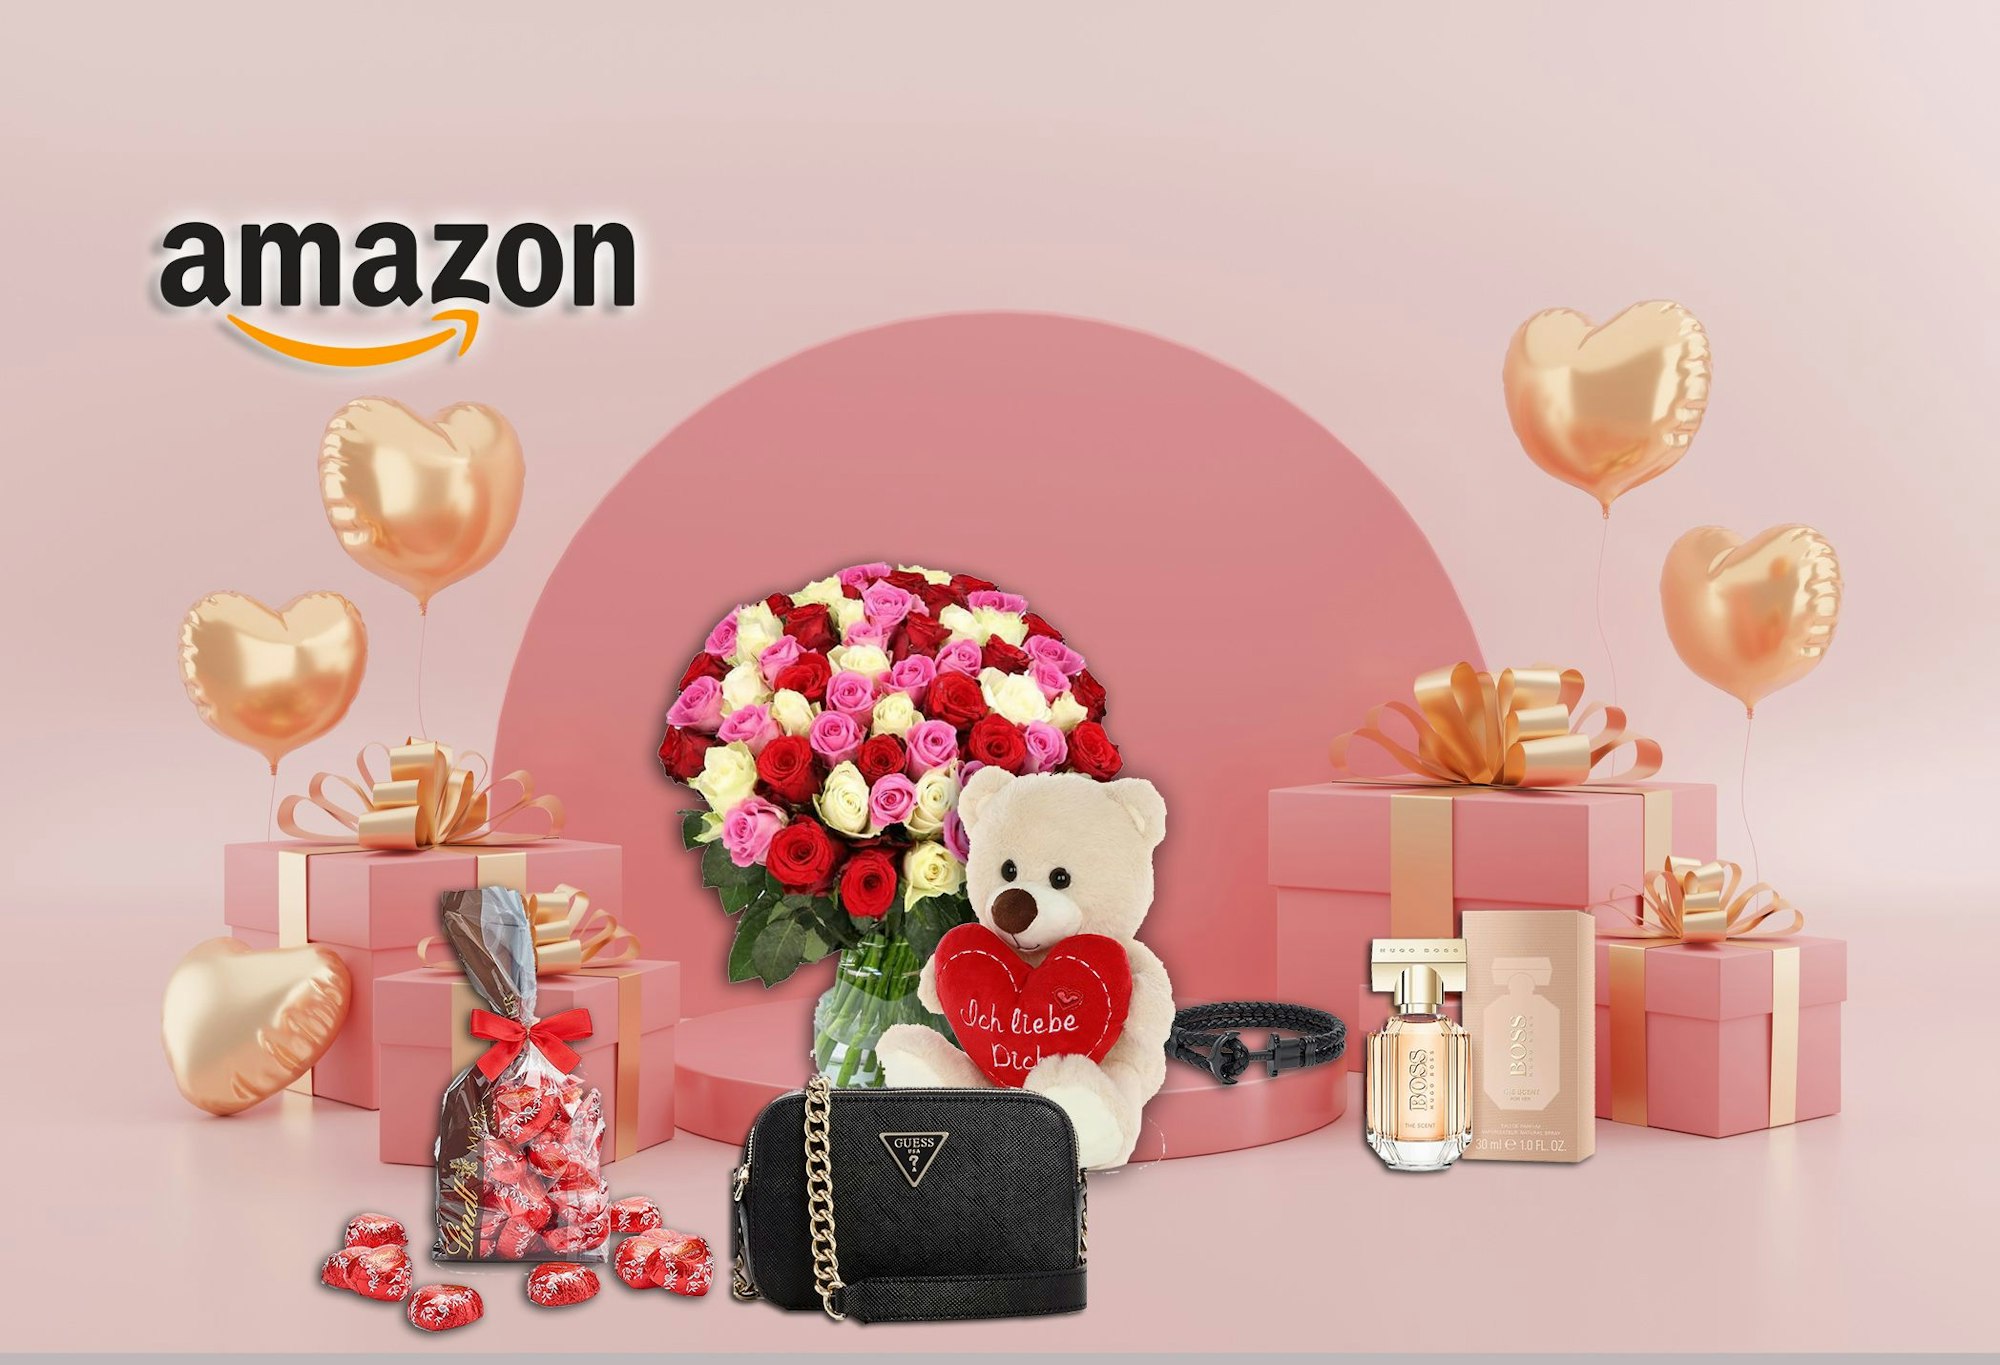 Verschiedene Valentinstagsgeschenke wie ein Blumenstrauß, eine Handtasche, Schokoladenherzen und ein Teddybär sind vor einem rosafarbenem Hintergrund angeordnet.